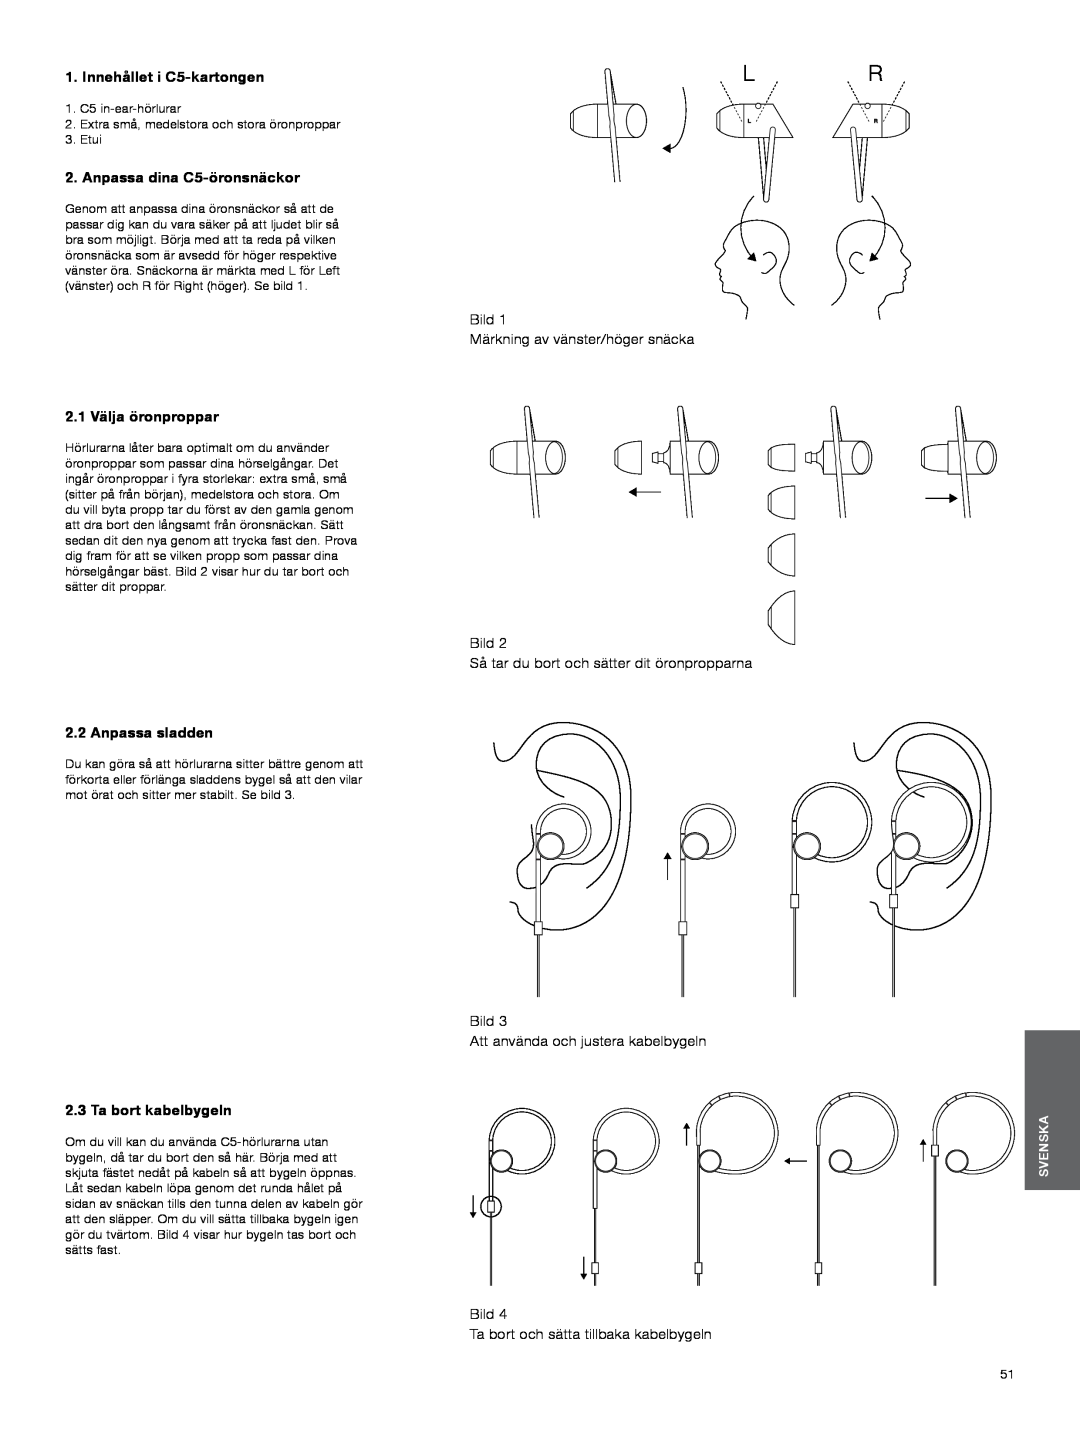 Bowers & Wilkins manual Innehållet i C5-kartongen, Anpassa dina C5-öronsnäckor, 2.1 Välja öronproppar, Anpassa sladden 